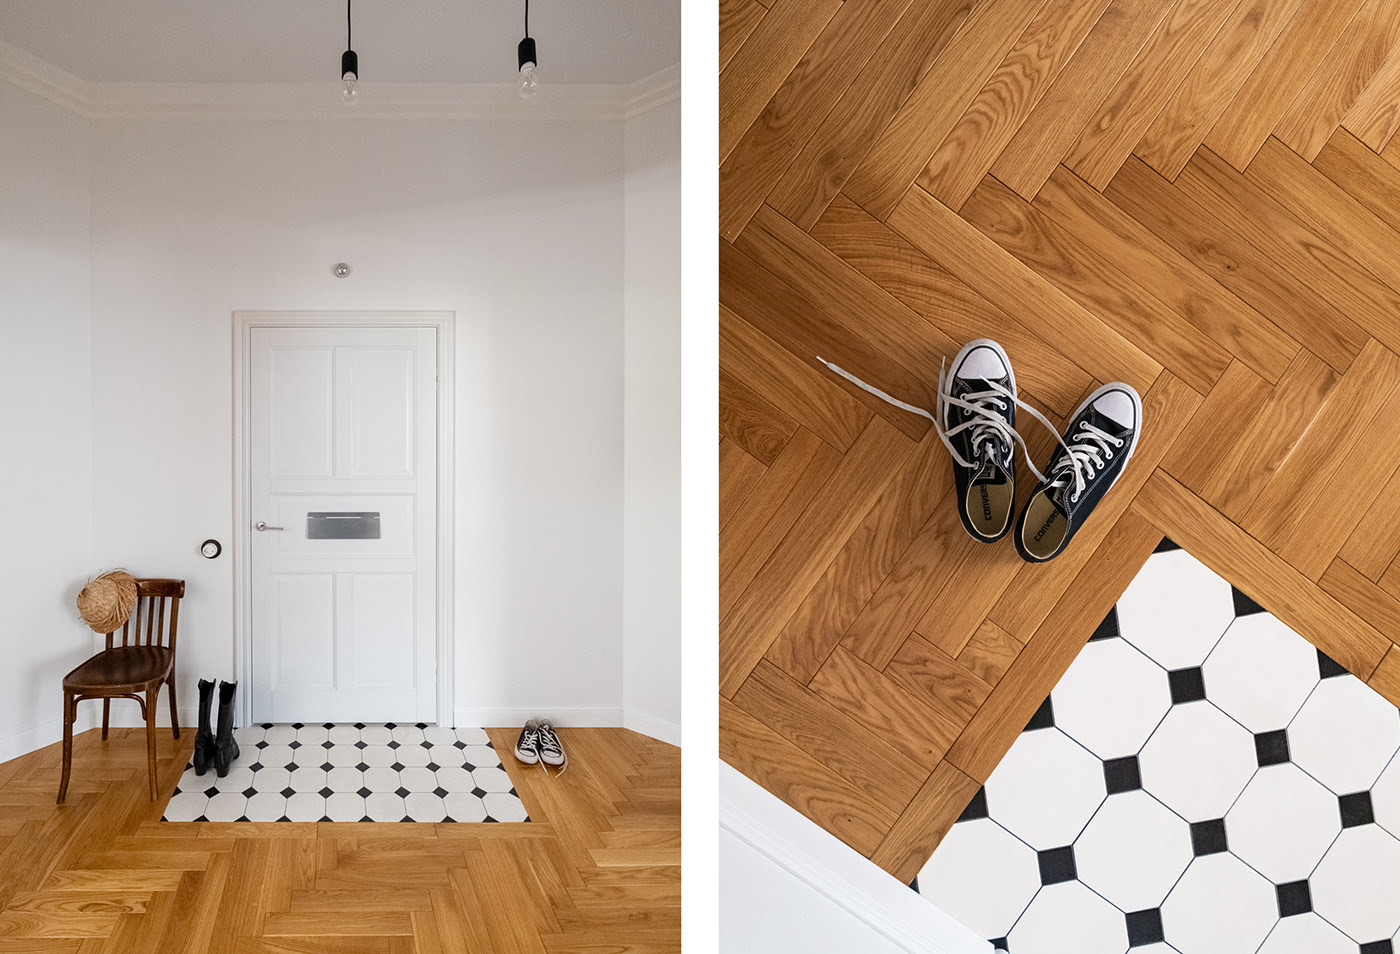 Lối vào thiết kế nhỏ xinh, thảm trải sàn quen thuộc được thay thế bằng gạch lát sàn màu đen - trắng cổ điển, trở thành điểm nhấn nổi bật trên sàn gỗ xuyên suốt căn hộ.